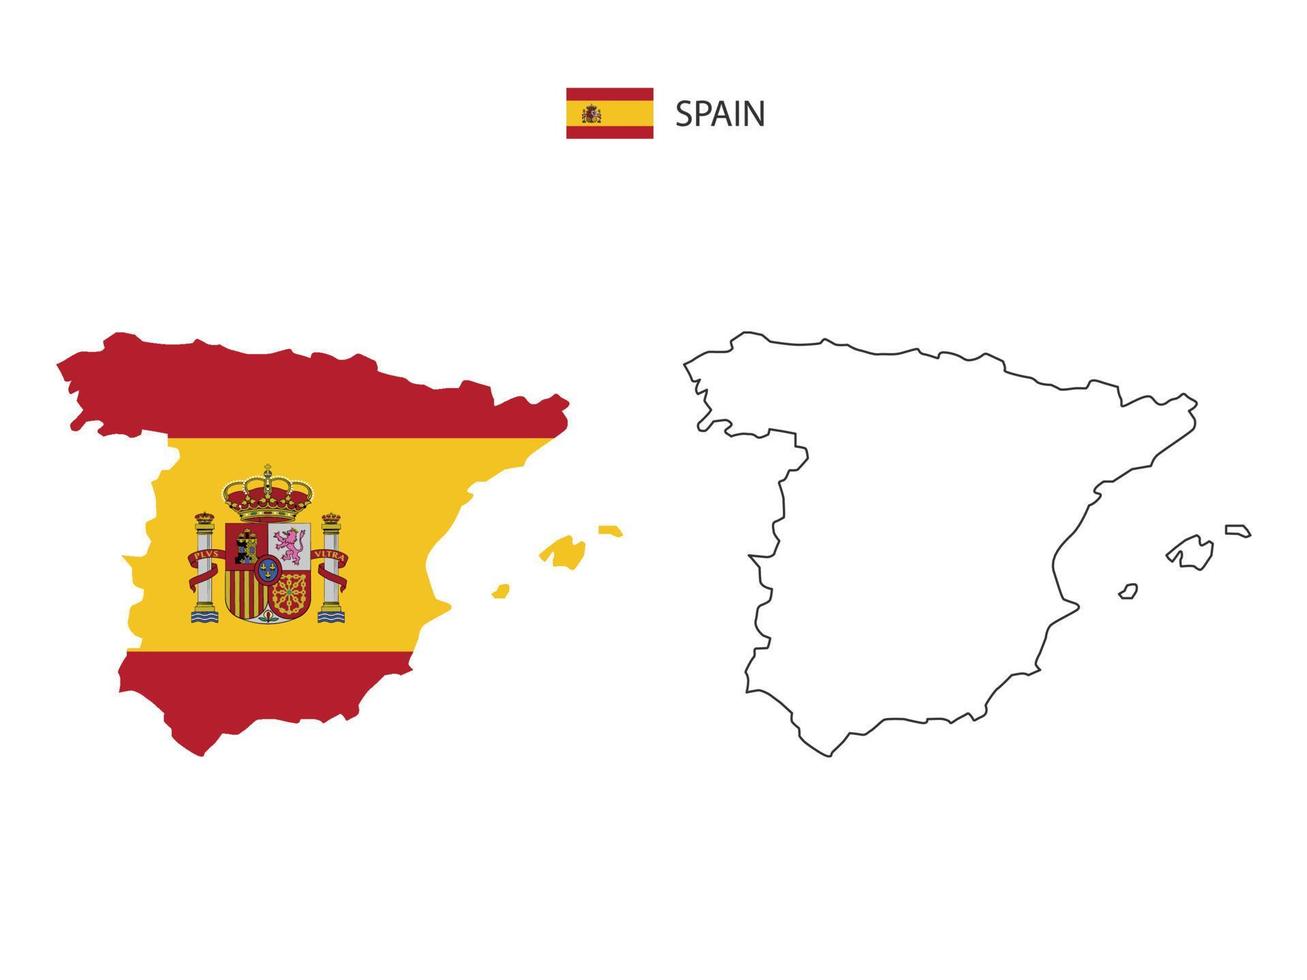 vetor da cidade do mapa da espanha dividido pelo estilo de simplicidade do contorno. tem 2 versões, versão de linha fina preta e cor da versão da bandeira do país. ambos os mapas estavam no fundo branco.